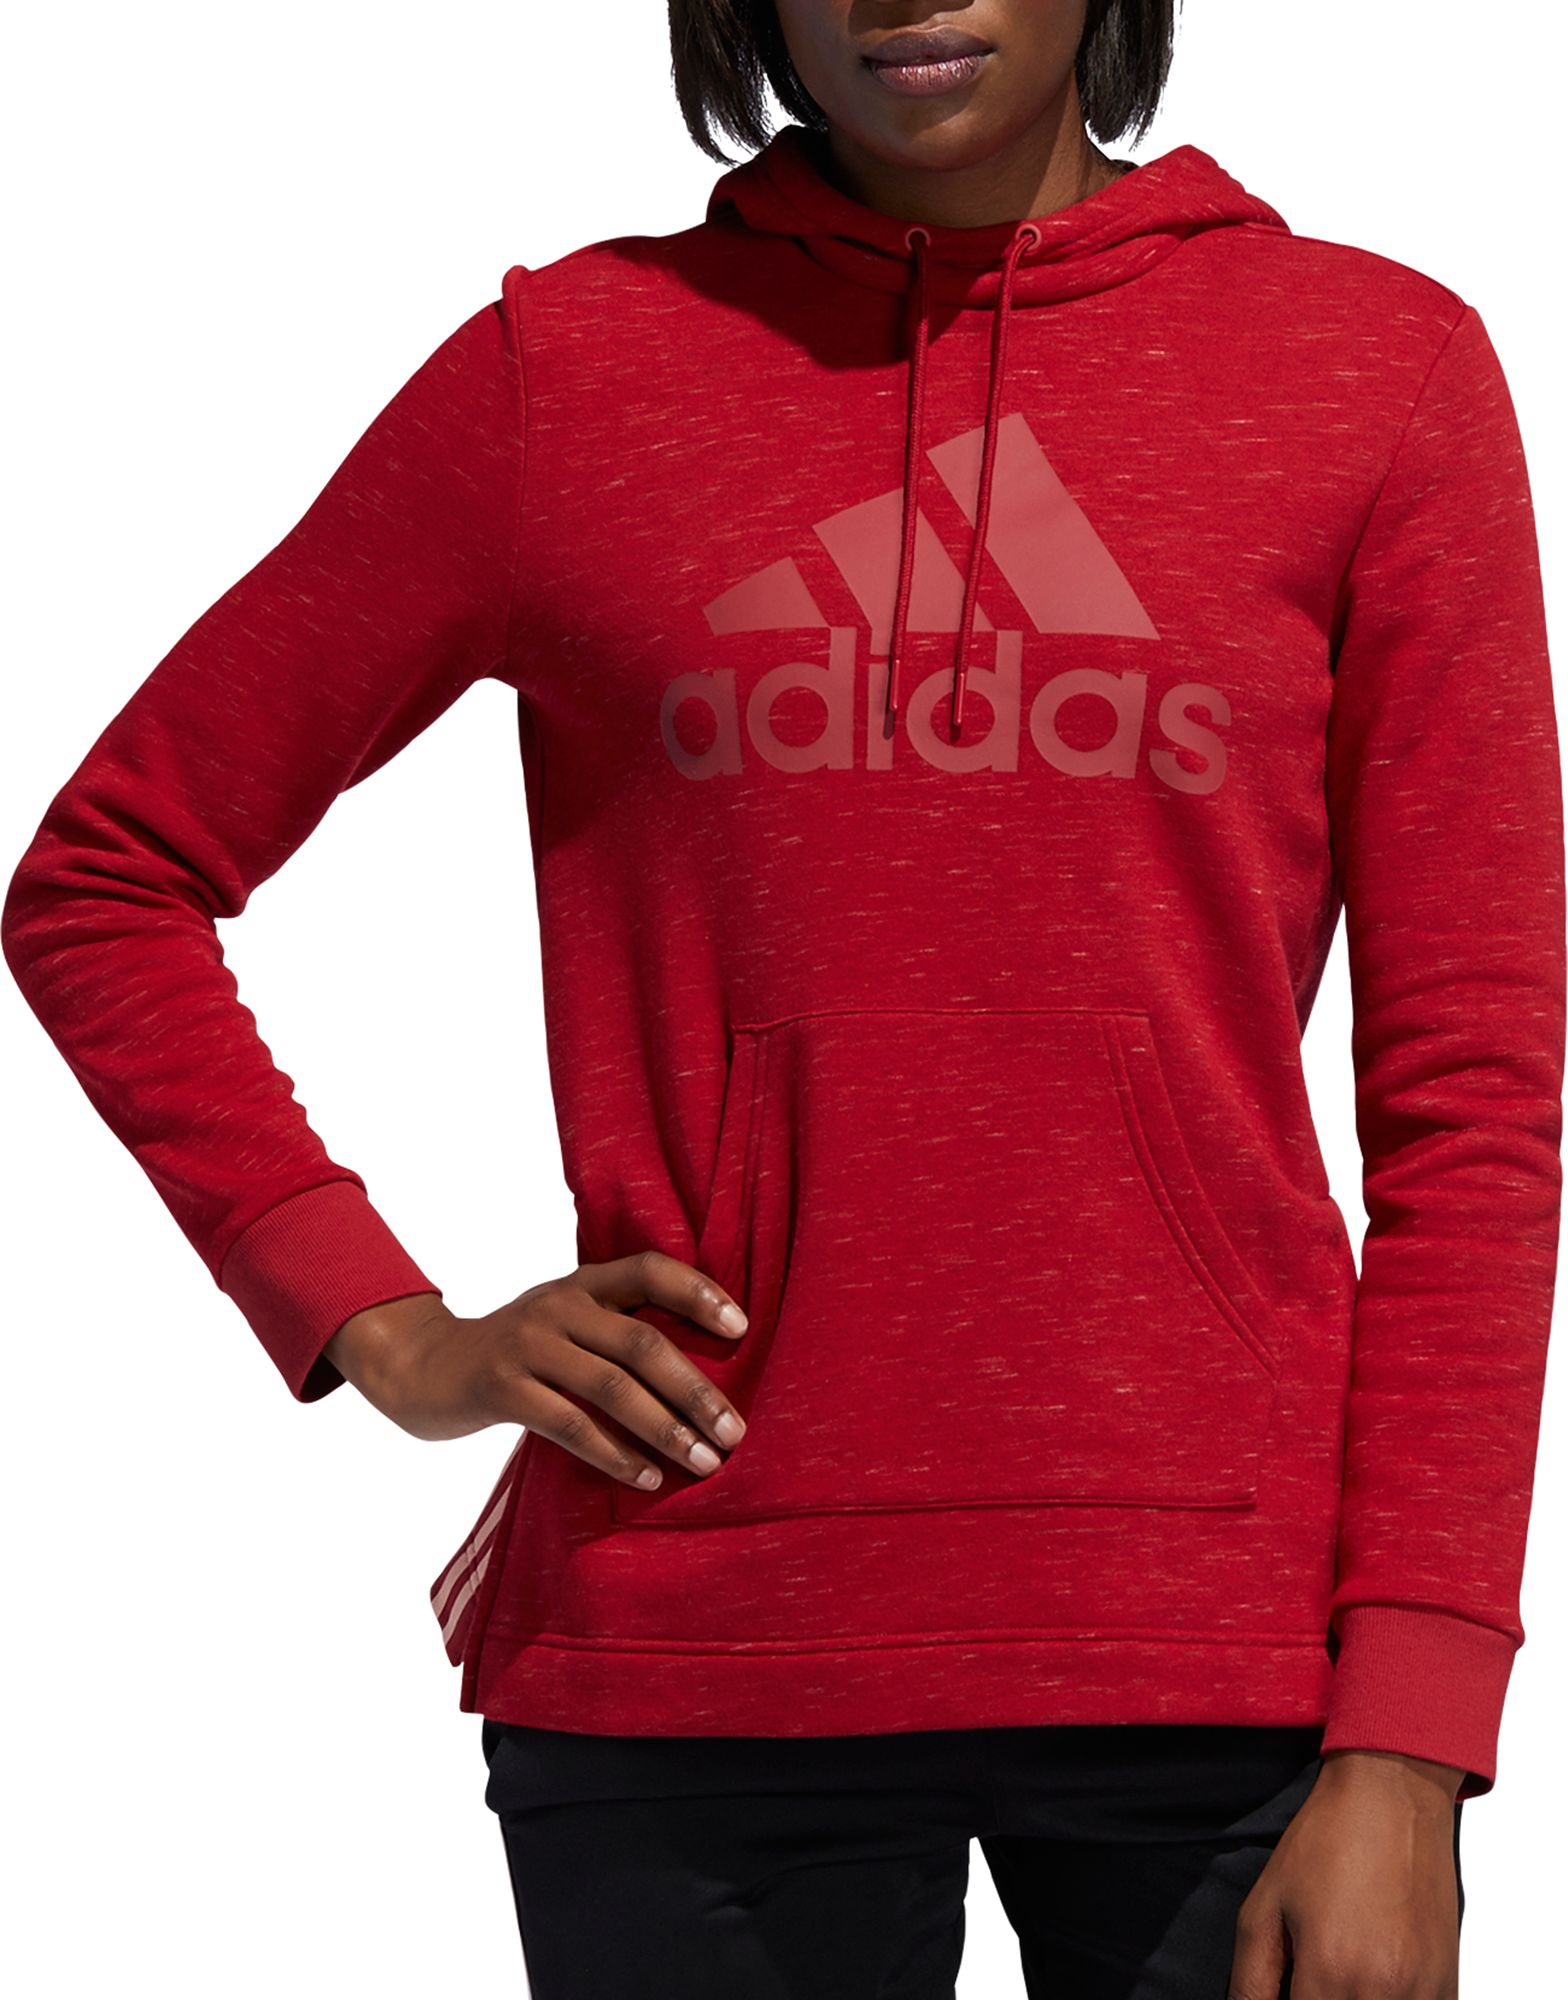 adidas hoodie women red